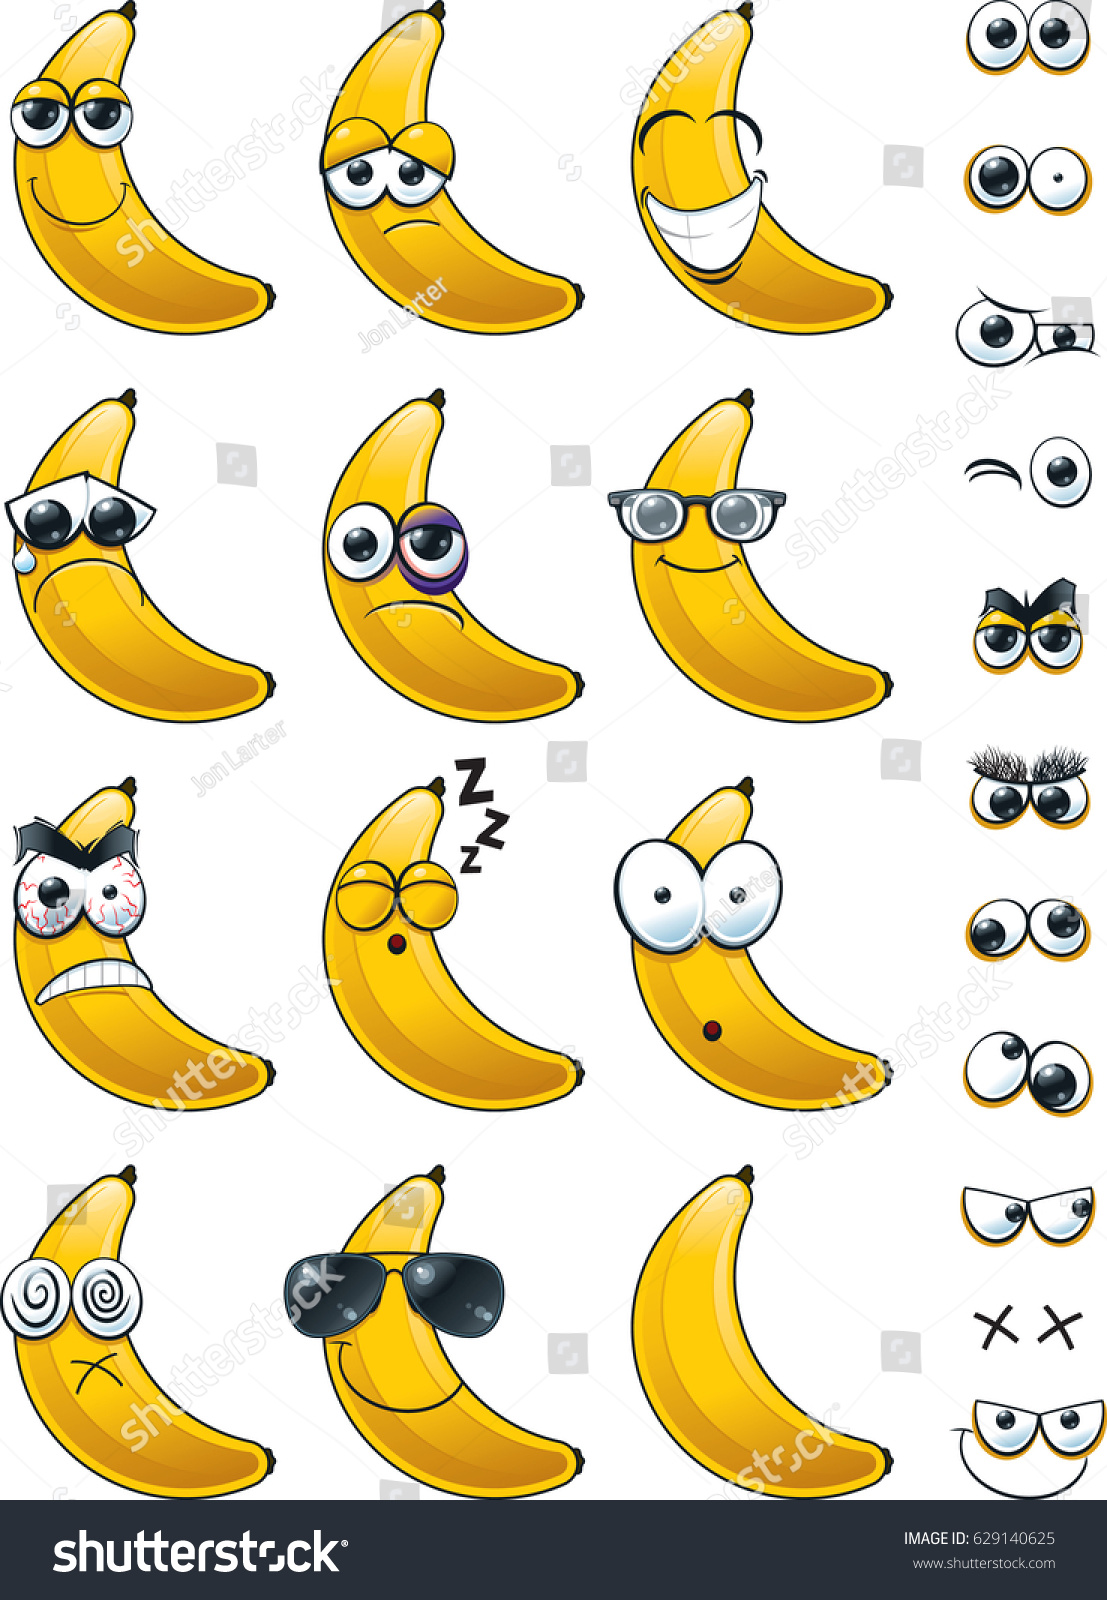 Что значит смайлик банан в телеграмме фото 90